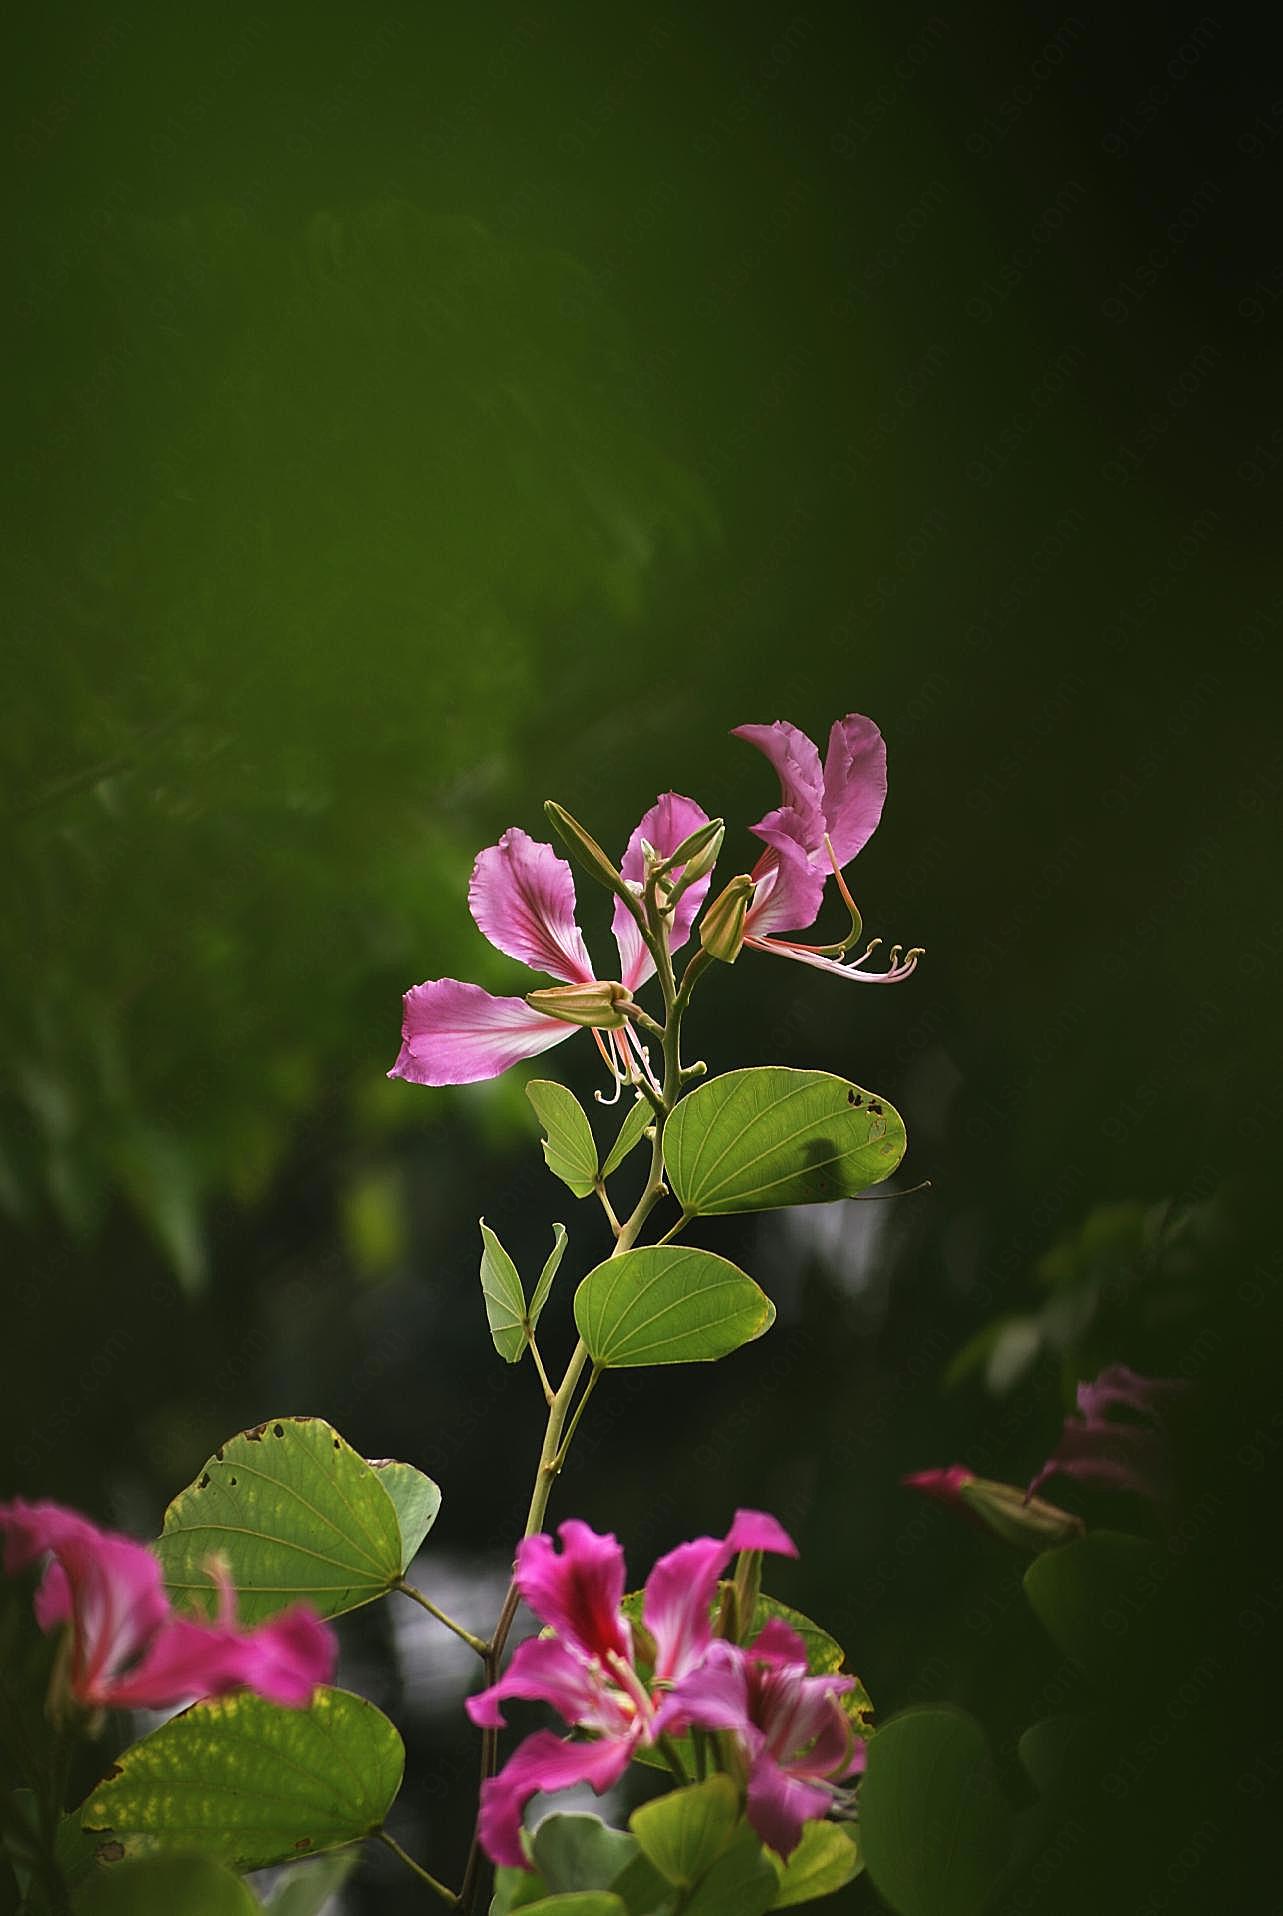 茉莉花摄影高清图片花卉